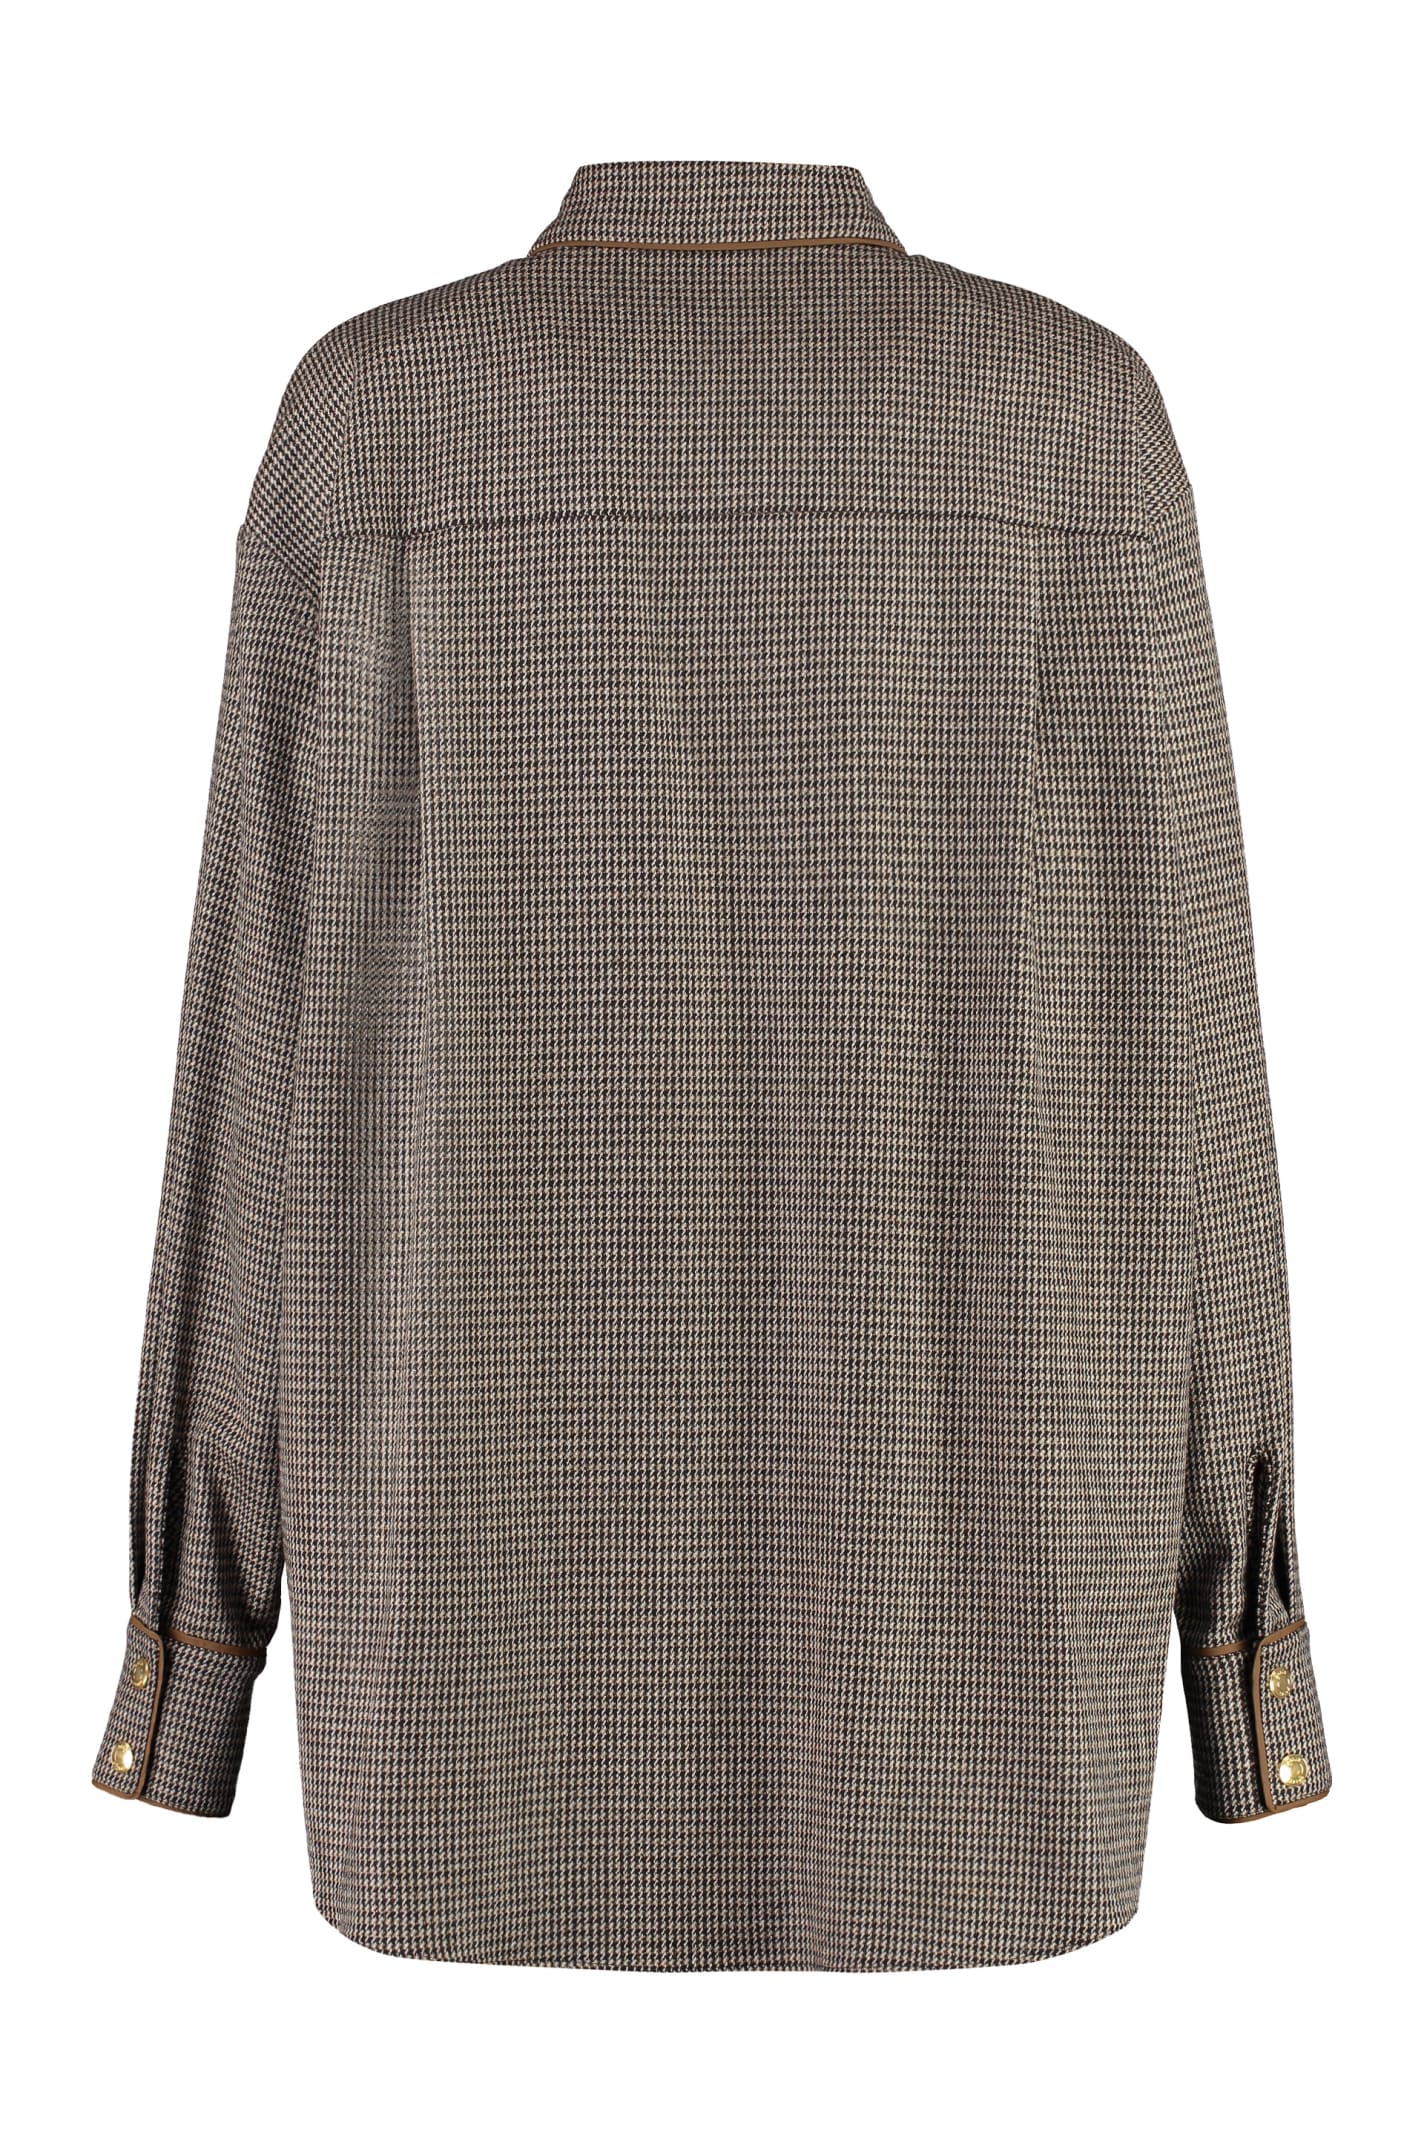 Shop Bally Long Sleeve Wool Blend Shirt In Camel